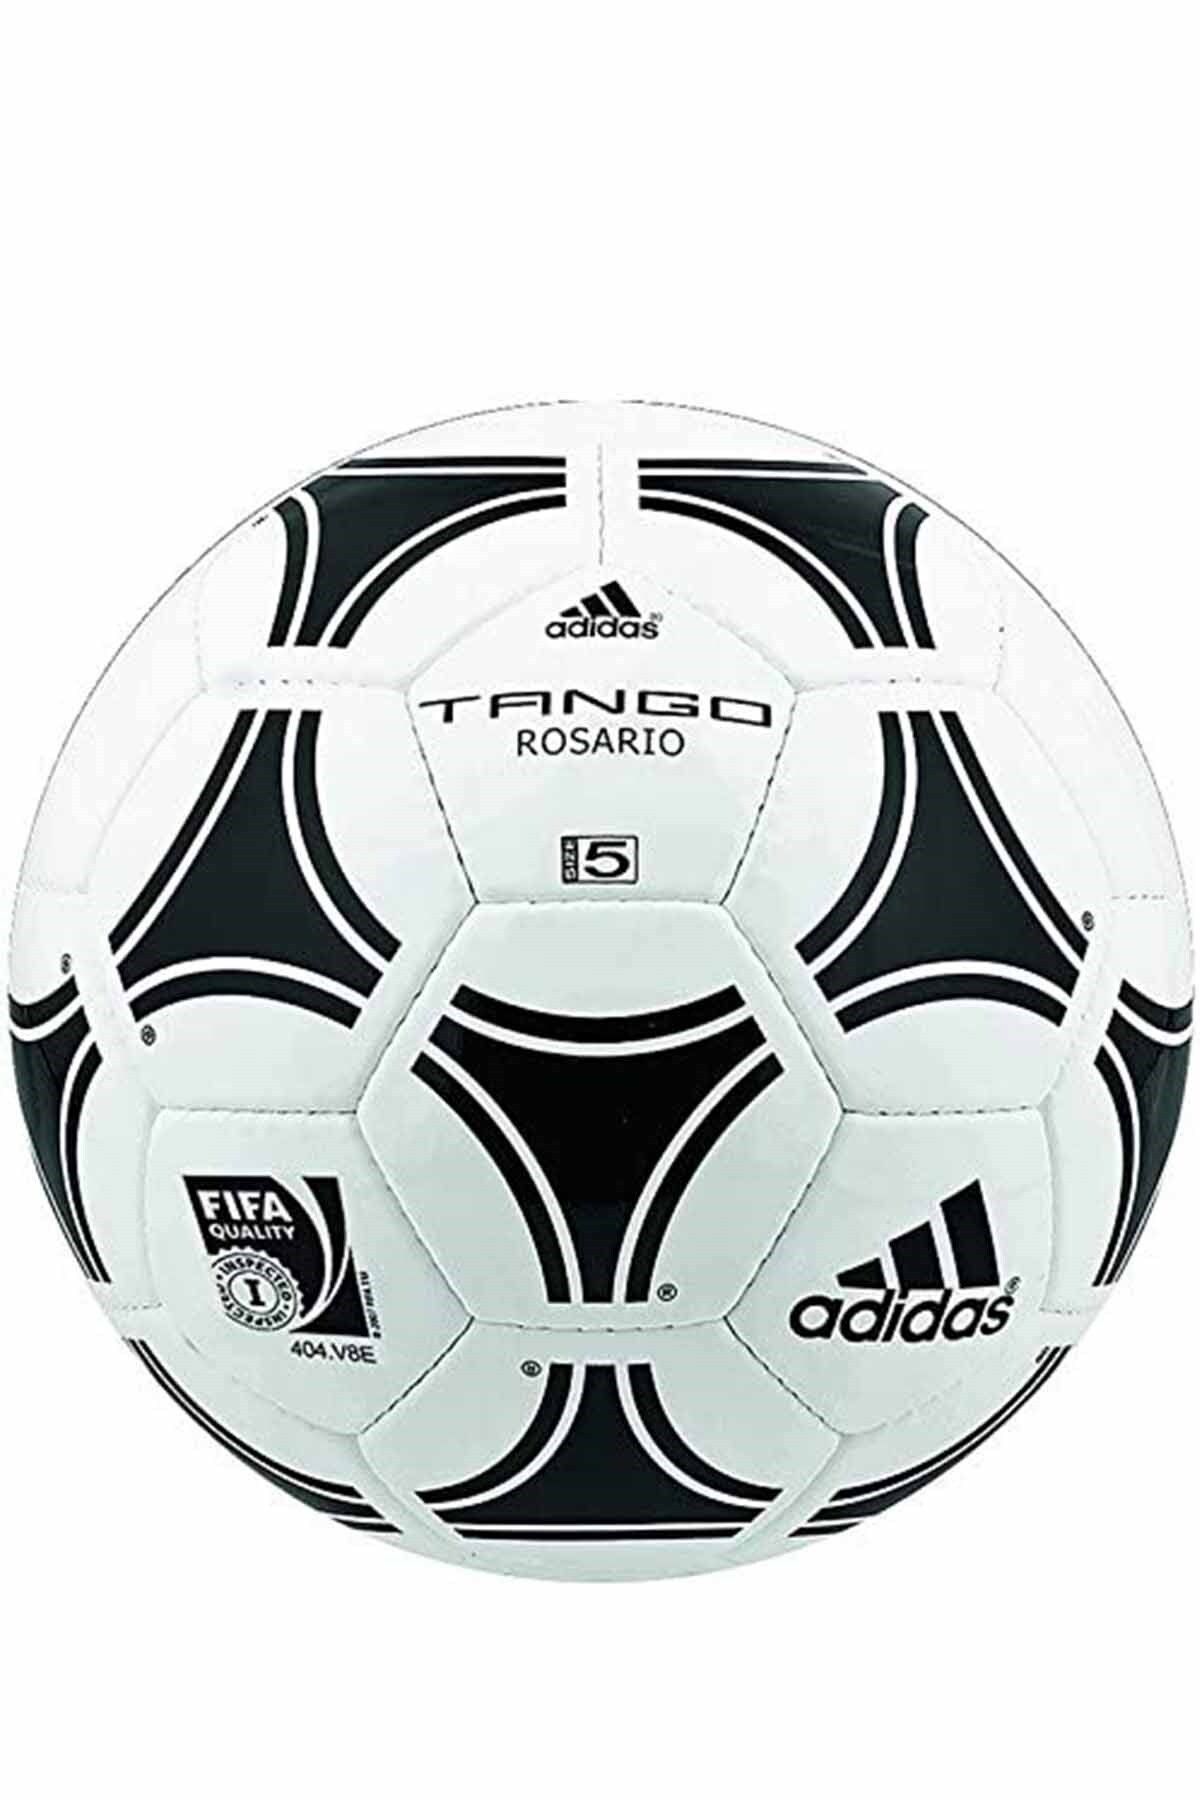 adidas Tango Rosario Unisex Futbol Topu 656927rs